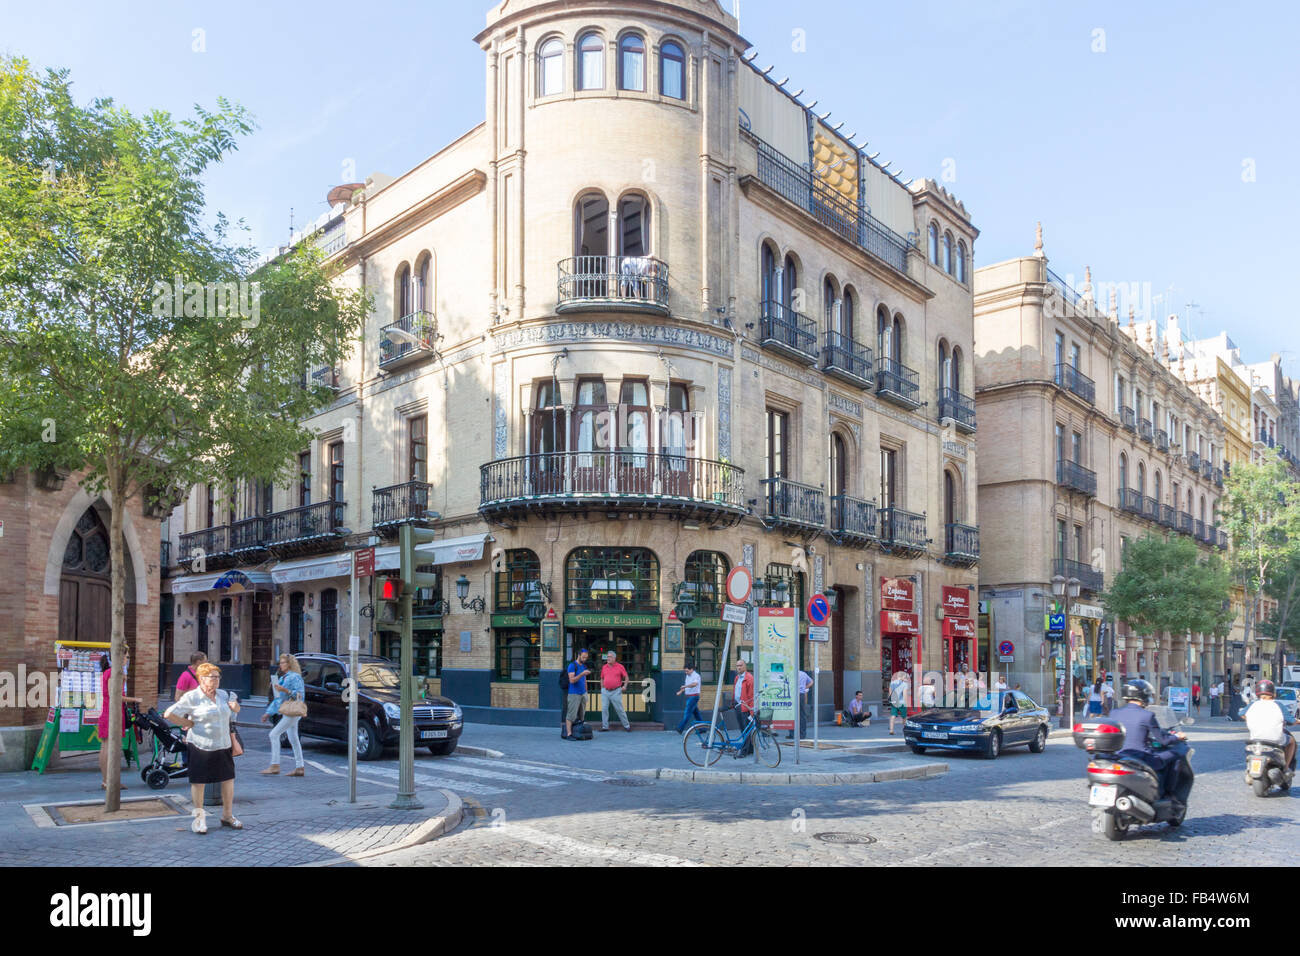 Street scene, Seville, Andalucia, Spain Stock Photo